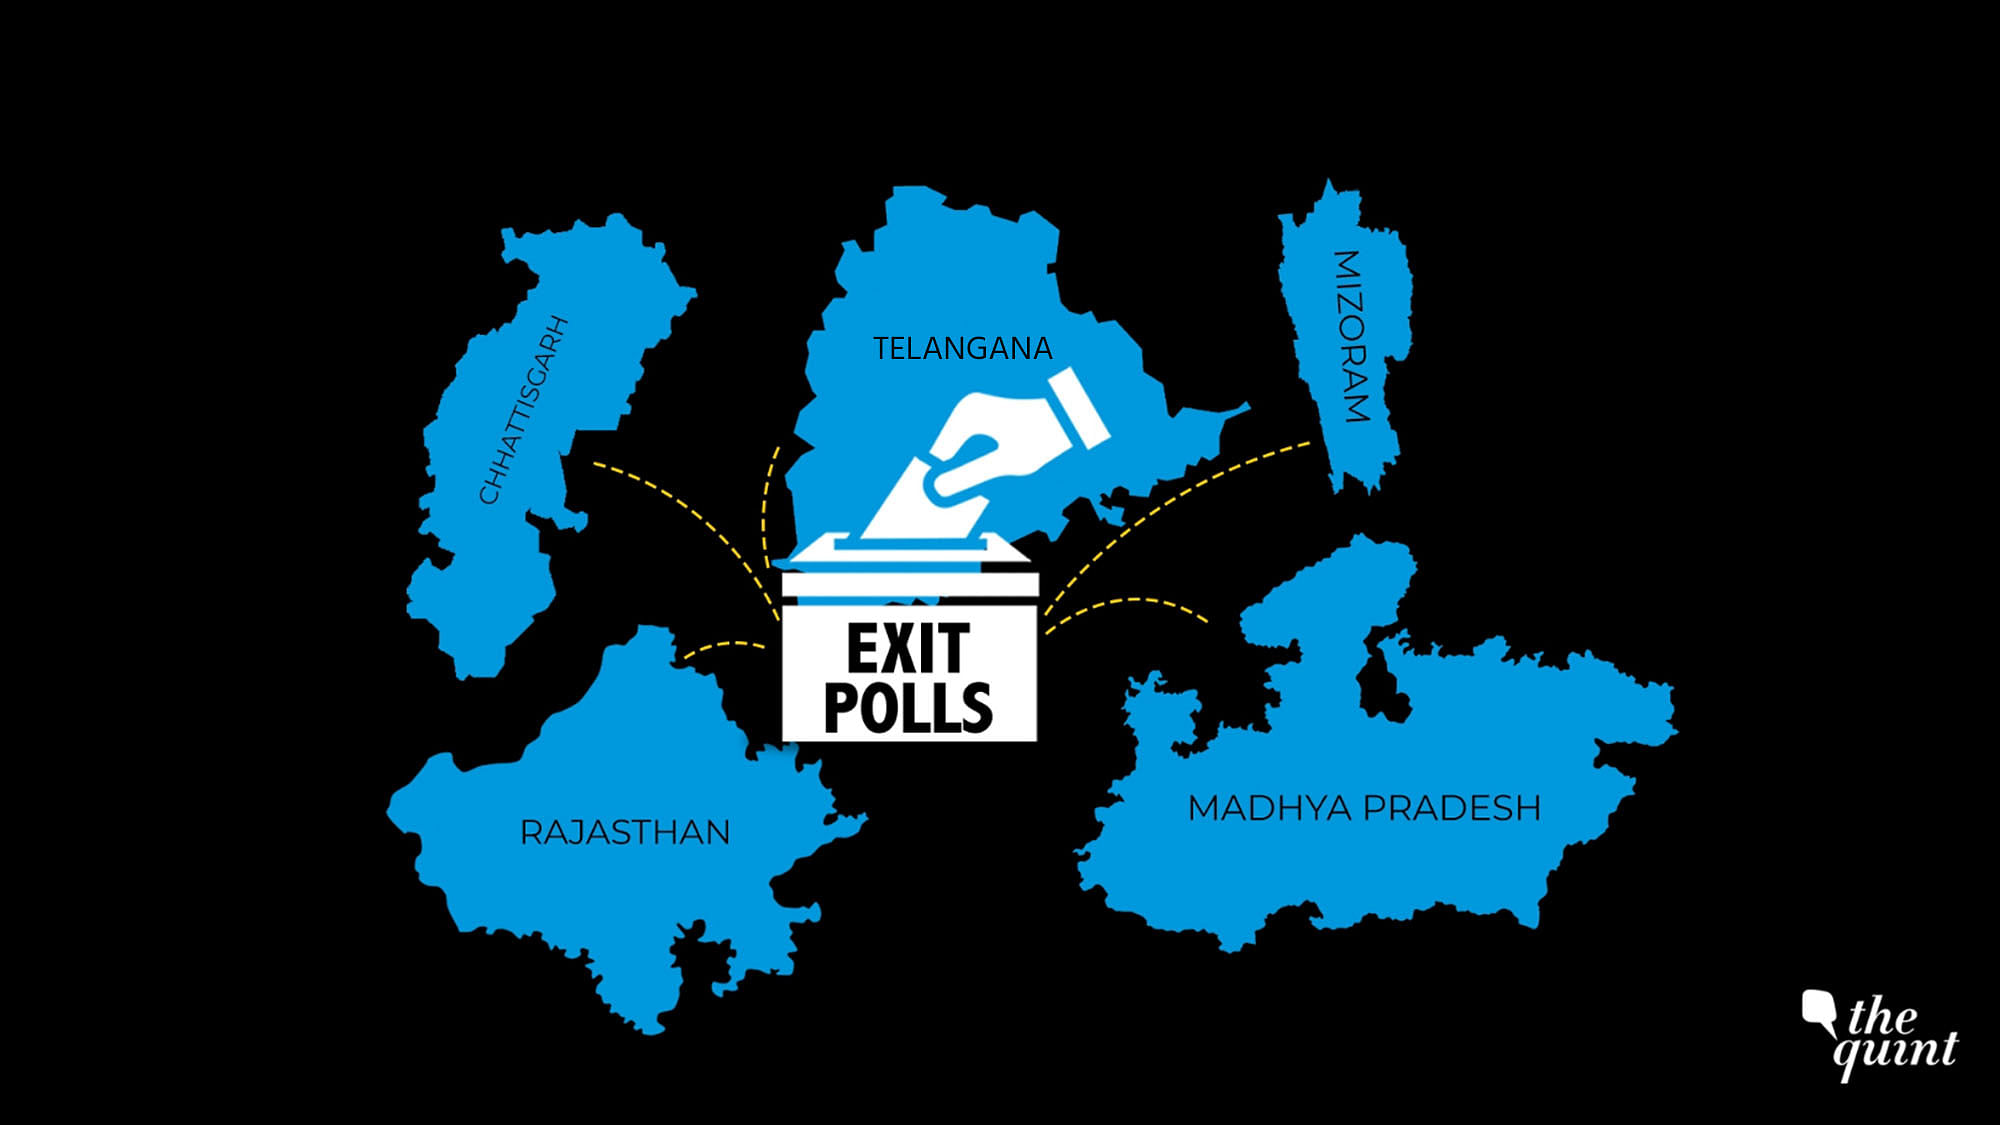 Elections were held in Chhattisgarh, Telangana, Madhya Pradesh, Mizoram, and Rajasthan.